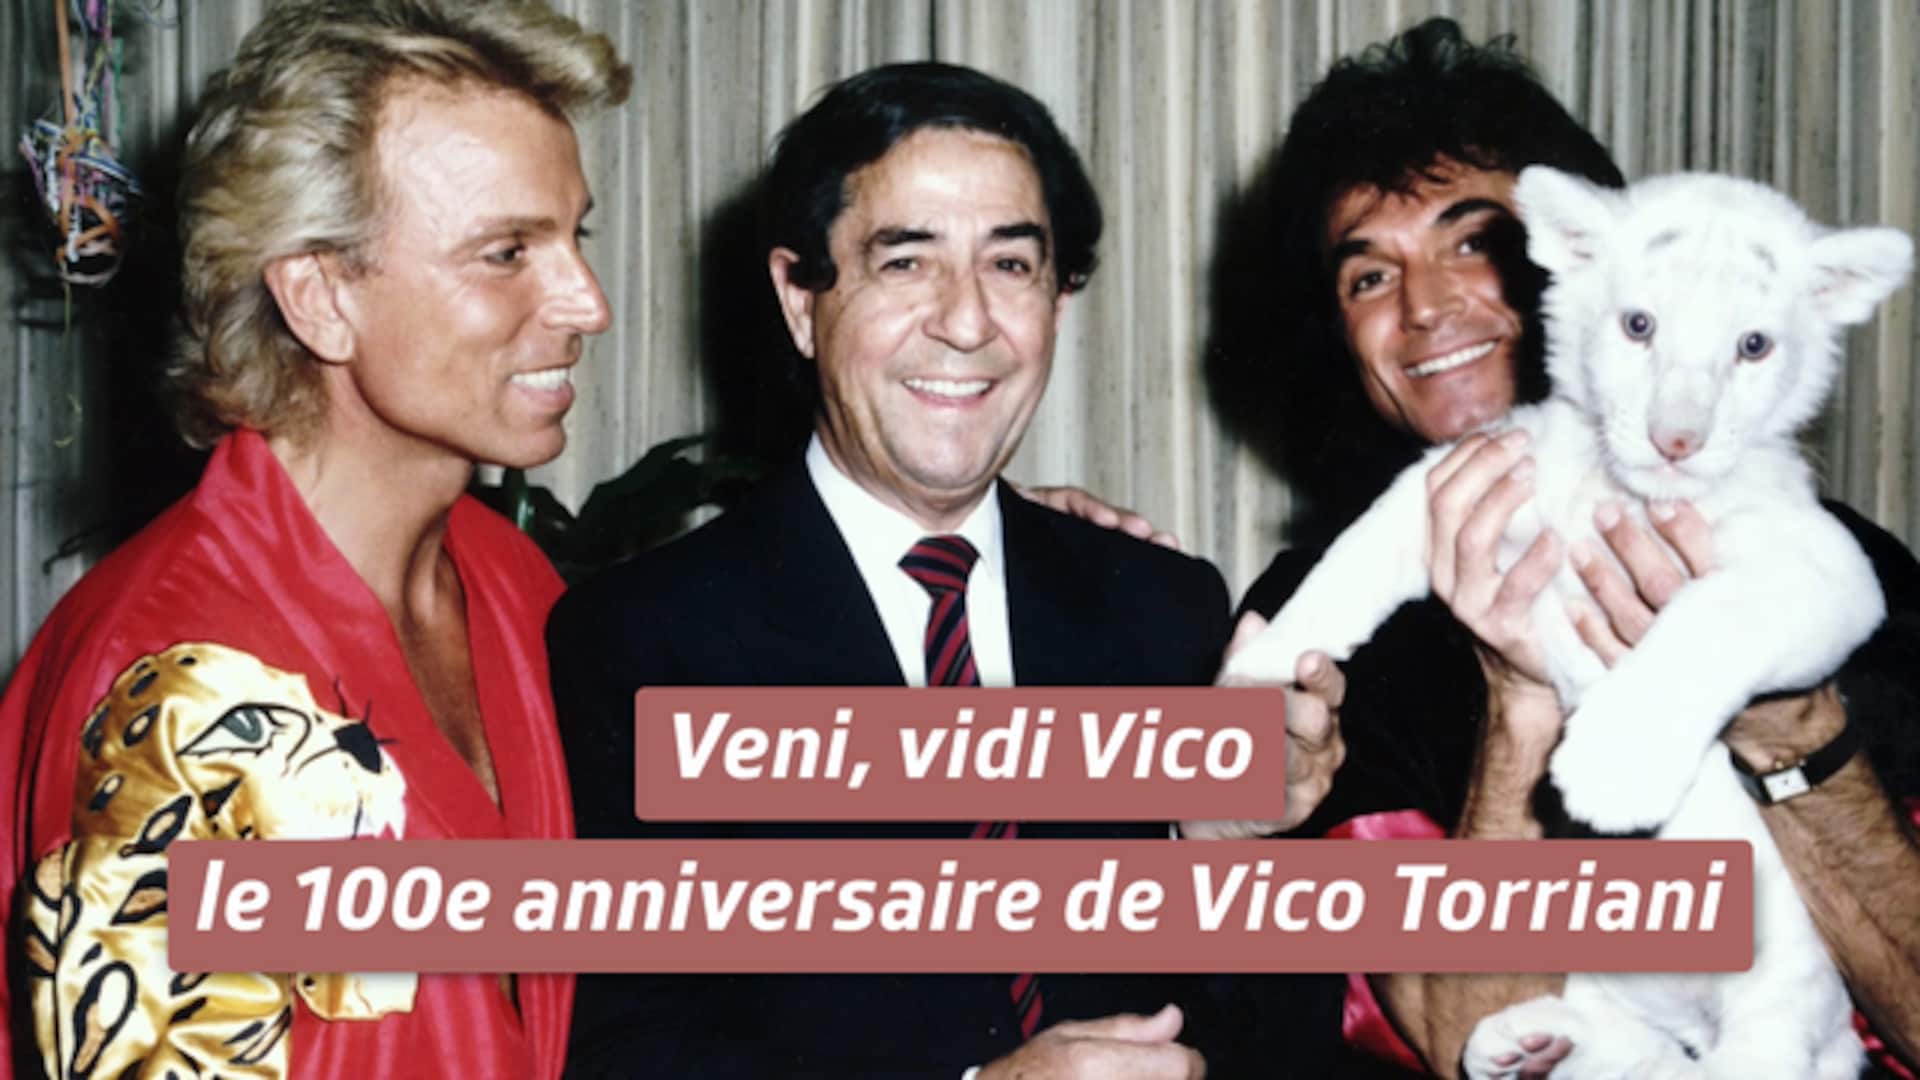 Veni, vidi Vico - le 100e anniversaire de Vico Torriani